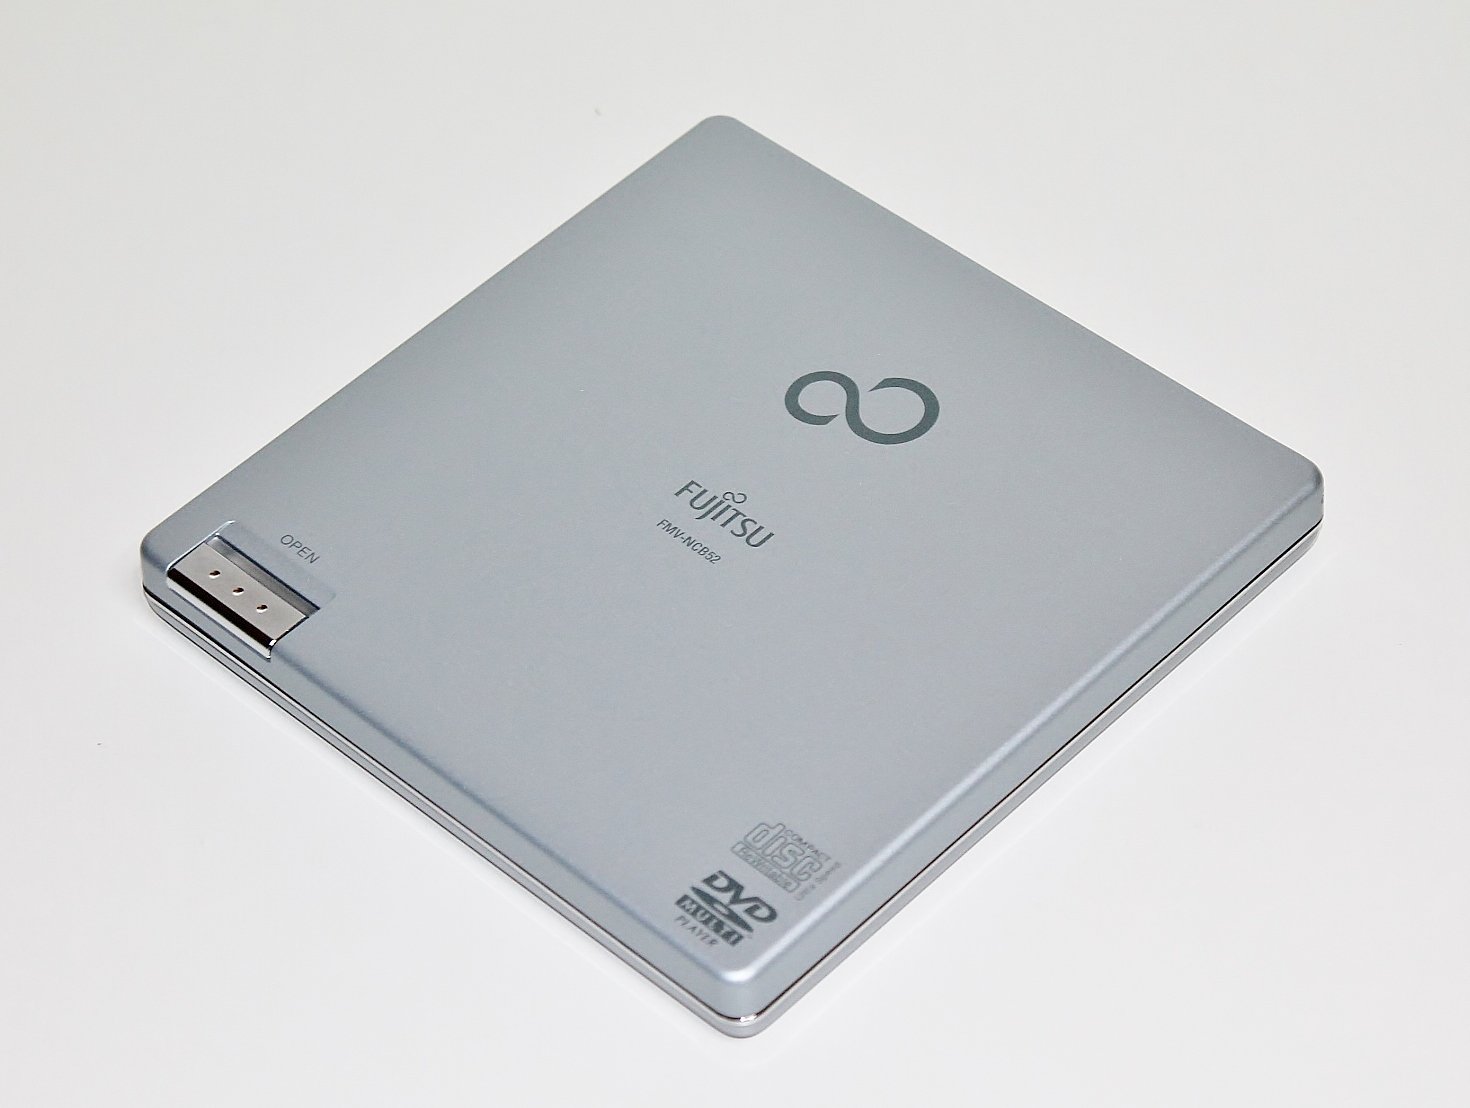  Fujitsu USB портативный DVD-ROM&amp;CD-R/RW Drive FMV-NCB52